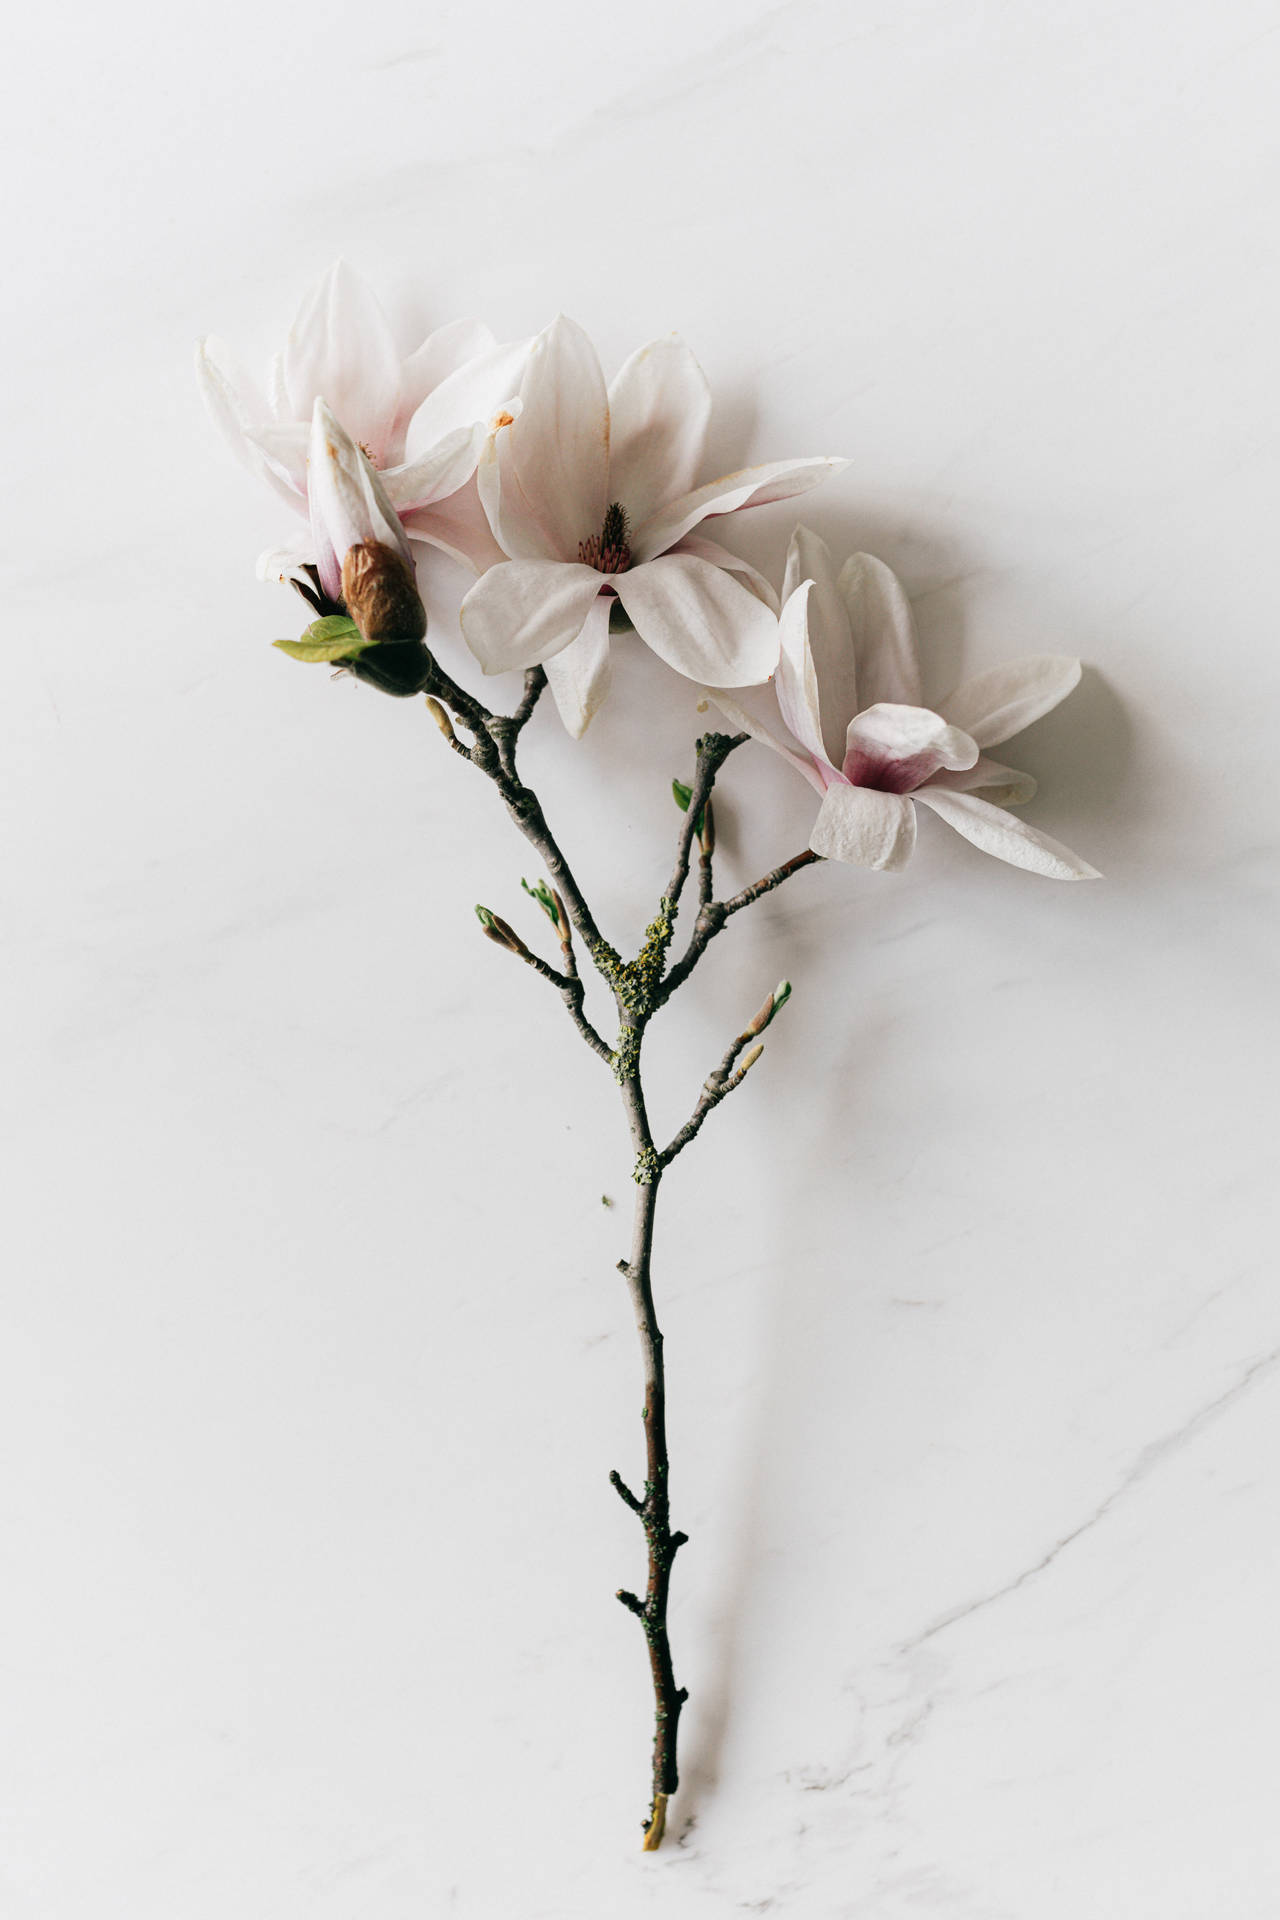 Magnoliakvist Med Vita Blommor. Wallpaper